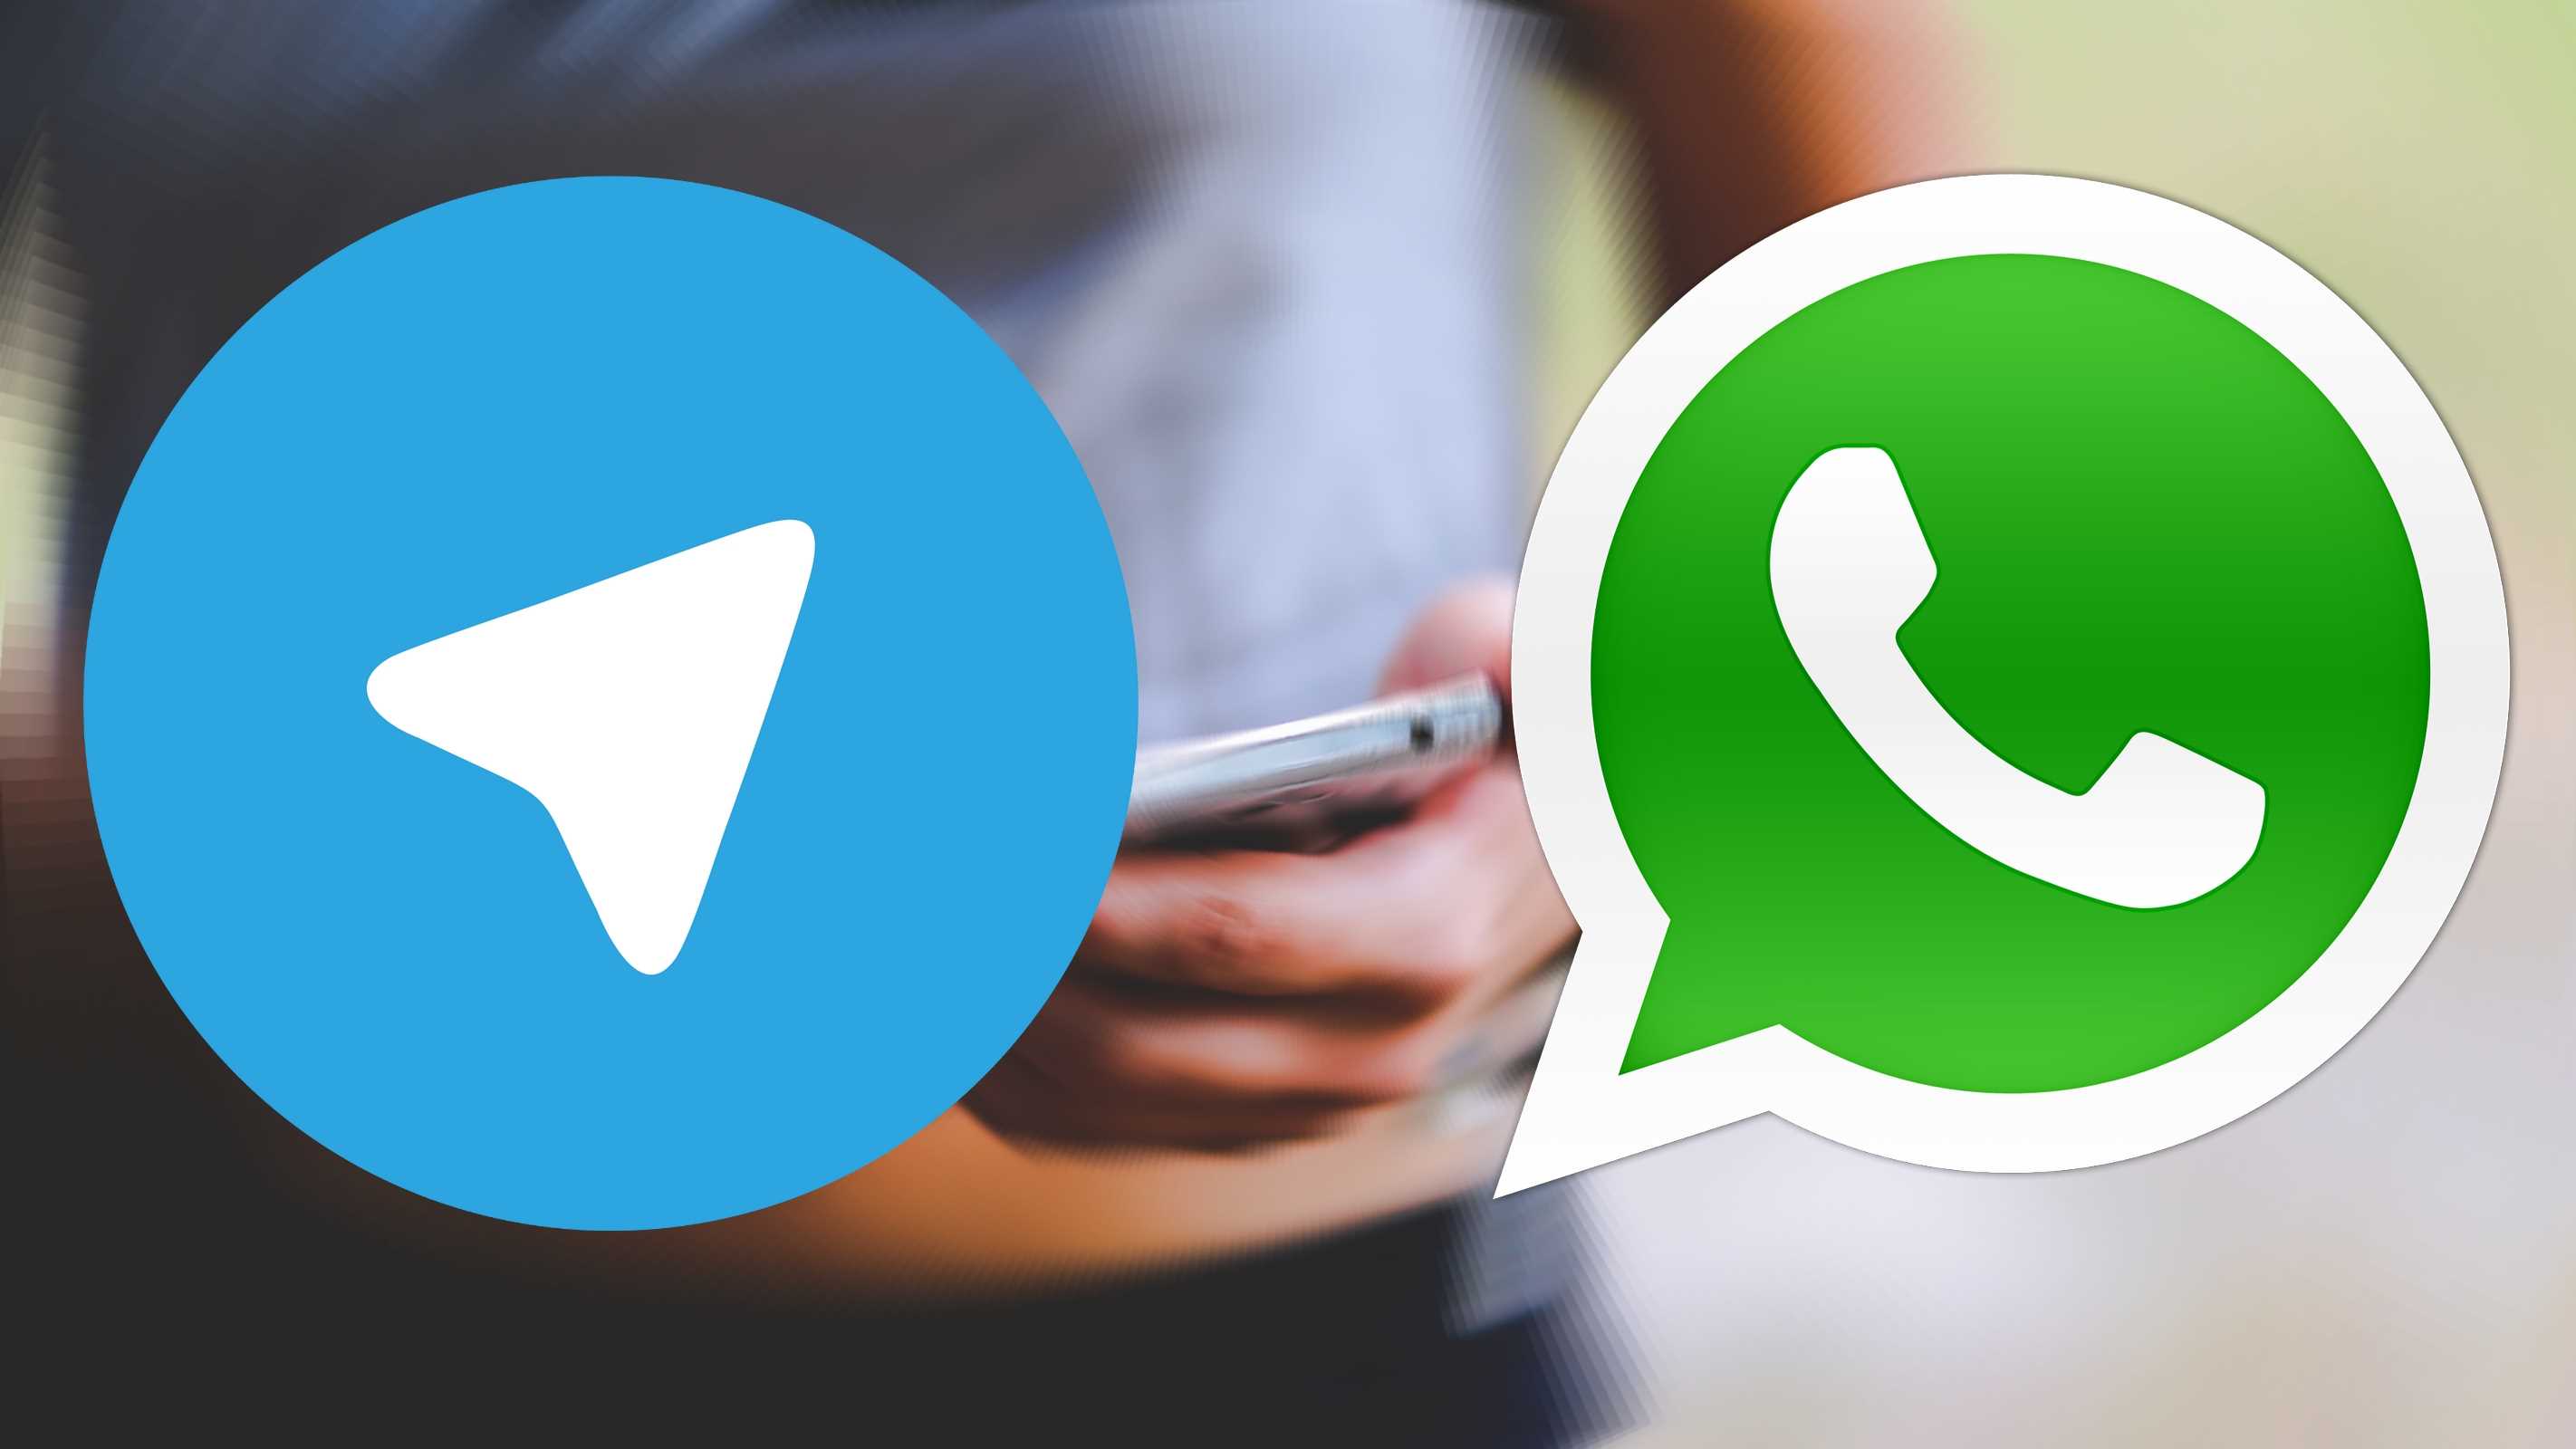 Whatsapp - WhatsApp versión azul no existe, sólo es otra estafa : With over 2 billion active users.